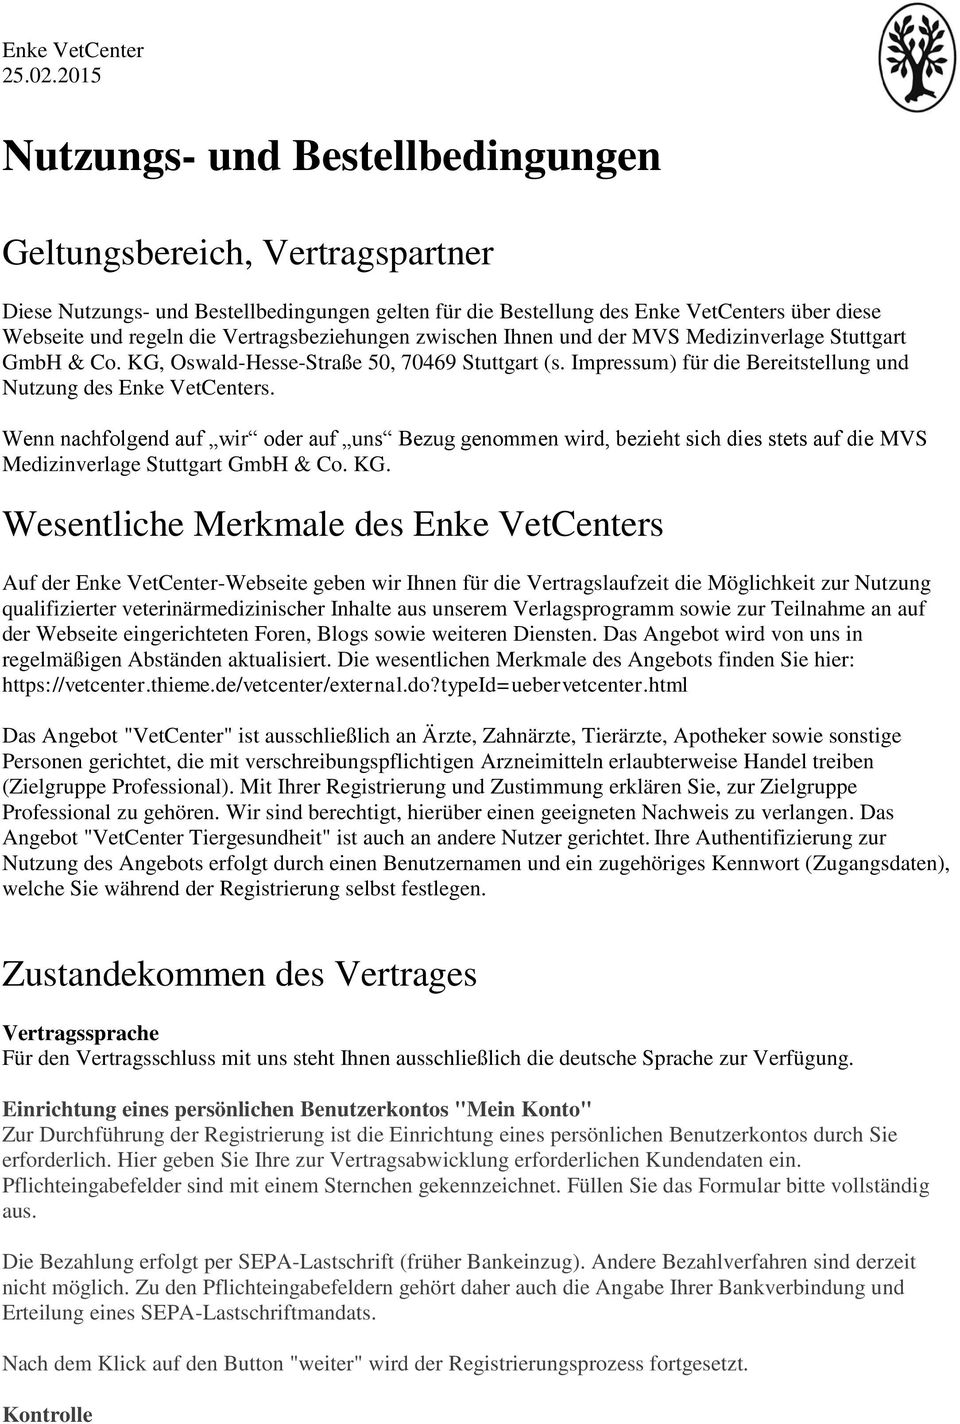 Vertragsbeziehungen zwischen Ihnen und der MVS Medizinverlage Stuttgart GmbH & Co. KG, Oswald-Hesse-Straße 50, 70469 Stuttgart (s. Impressum) für die Bereitstellung und Nutzung des Enke VetCenters.